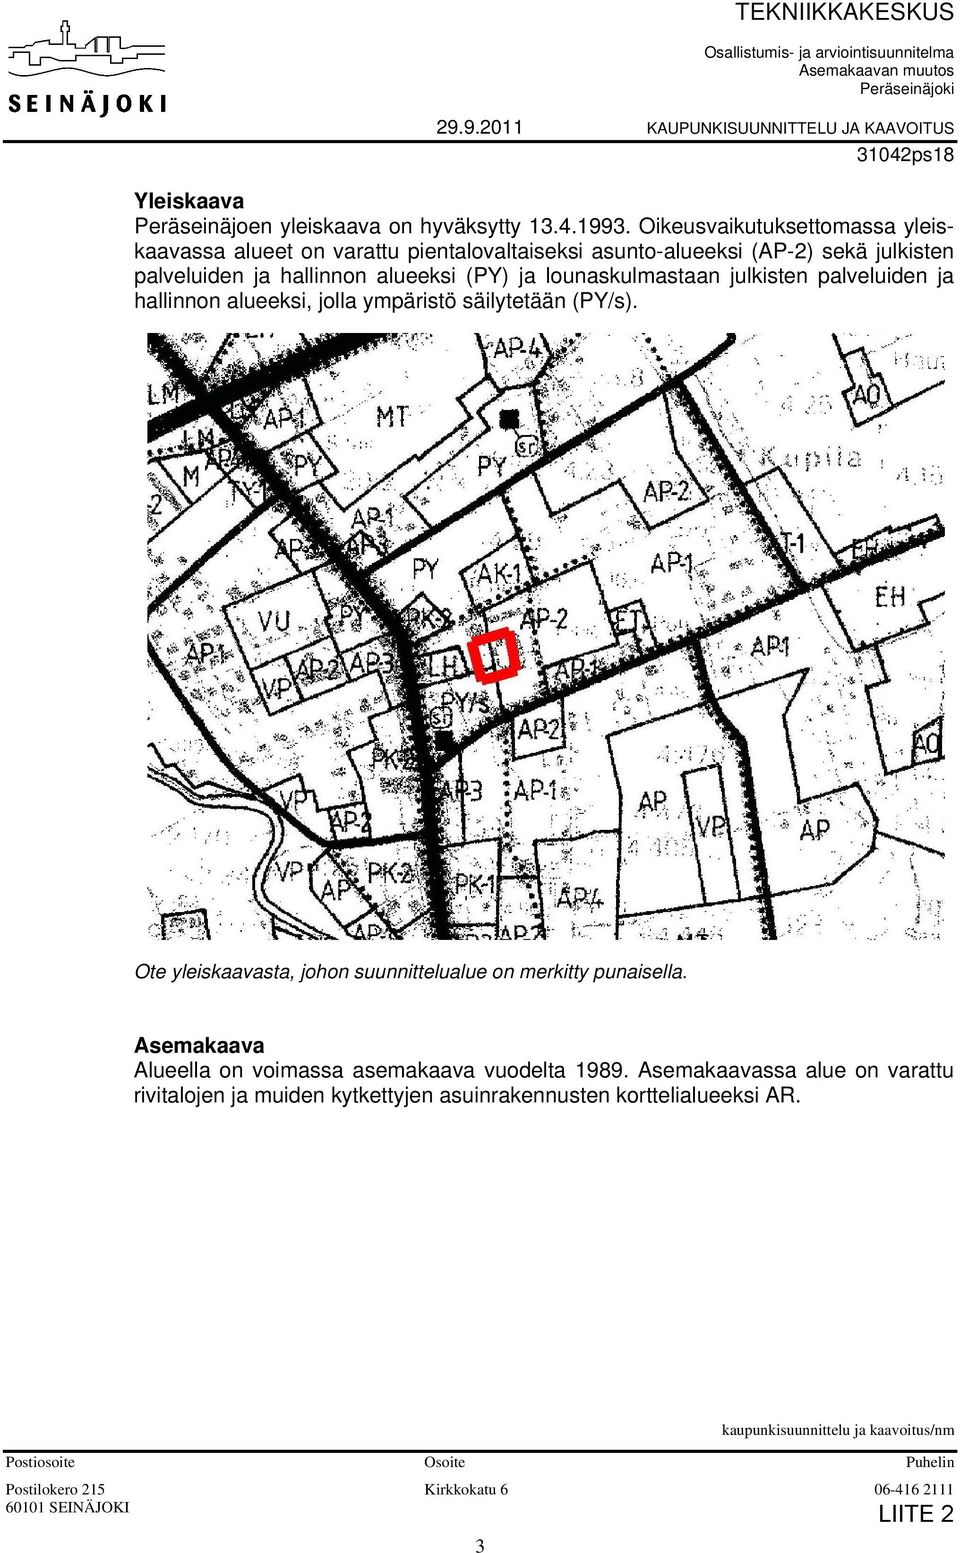 hallinnon alueeksi, jolla ympäristö säilytetään (PY/s). Ote yleiskaavasta, johon suunnittelualue on merkitty punaisella. Asemakaava Alueella on voimassa asemakaava vuodelta 1989.